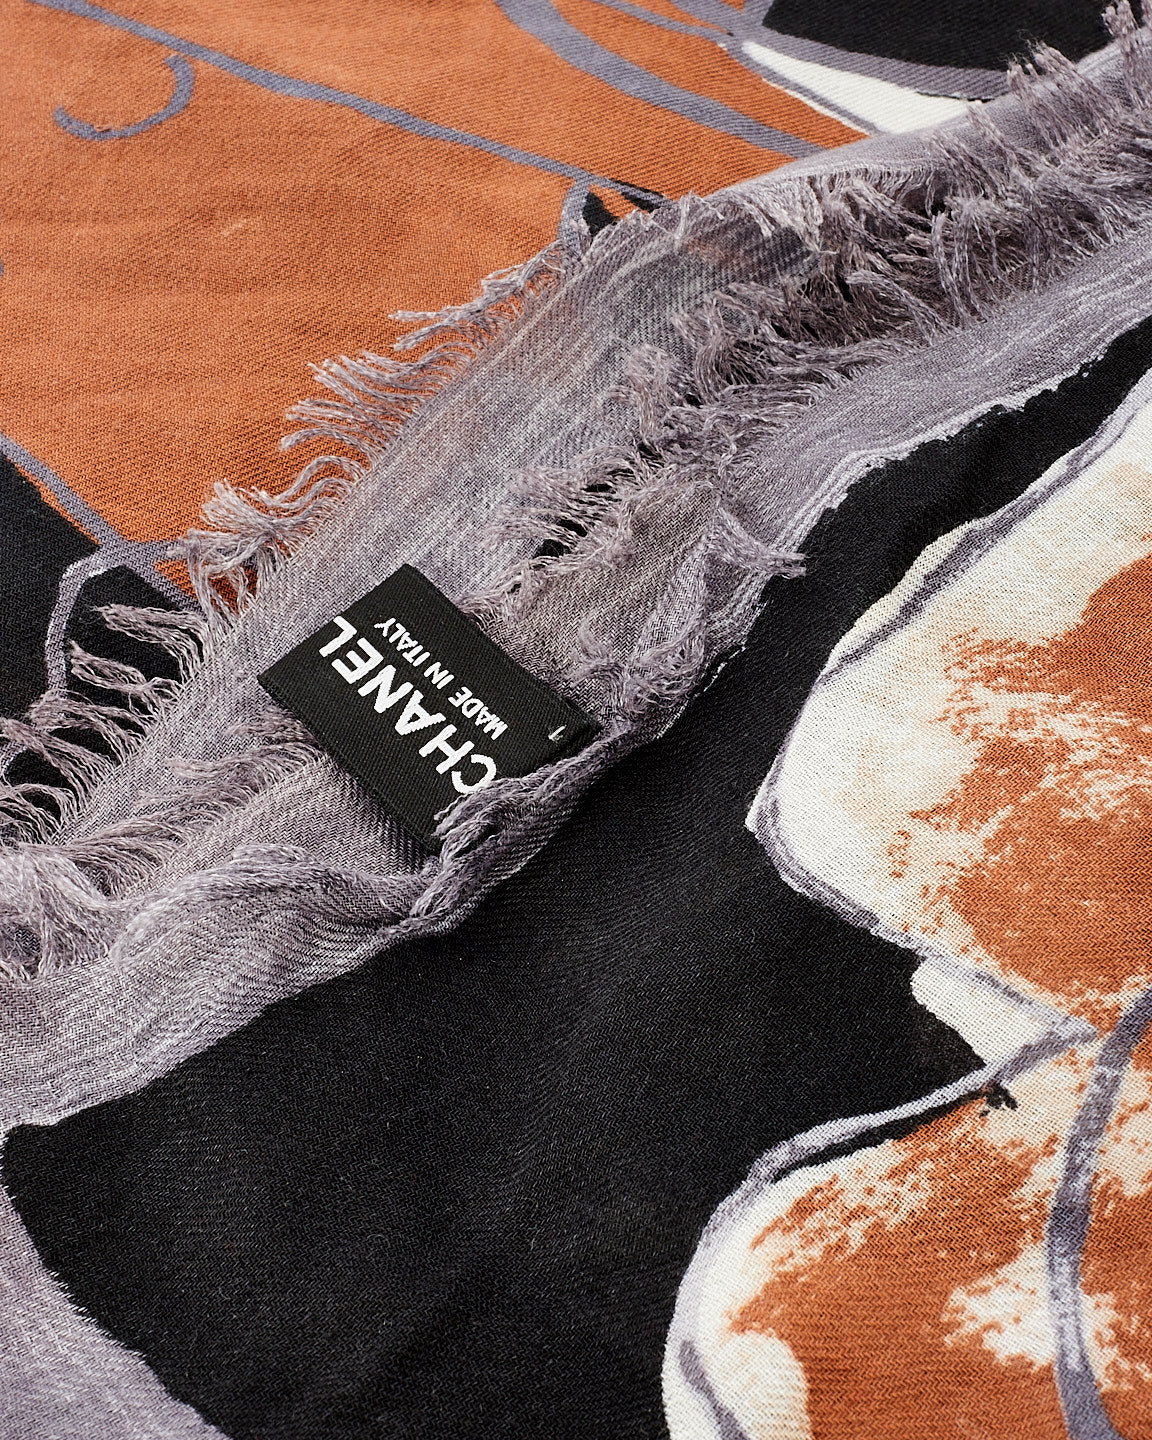 Écharpe Chanel à imprimé abstrait noir et marron avec logo CC et camélia